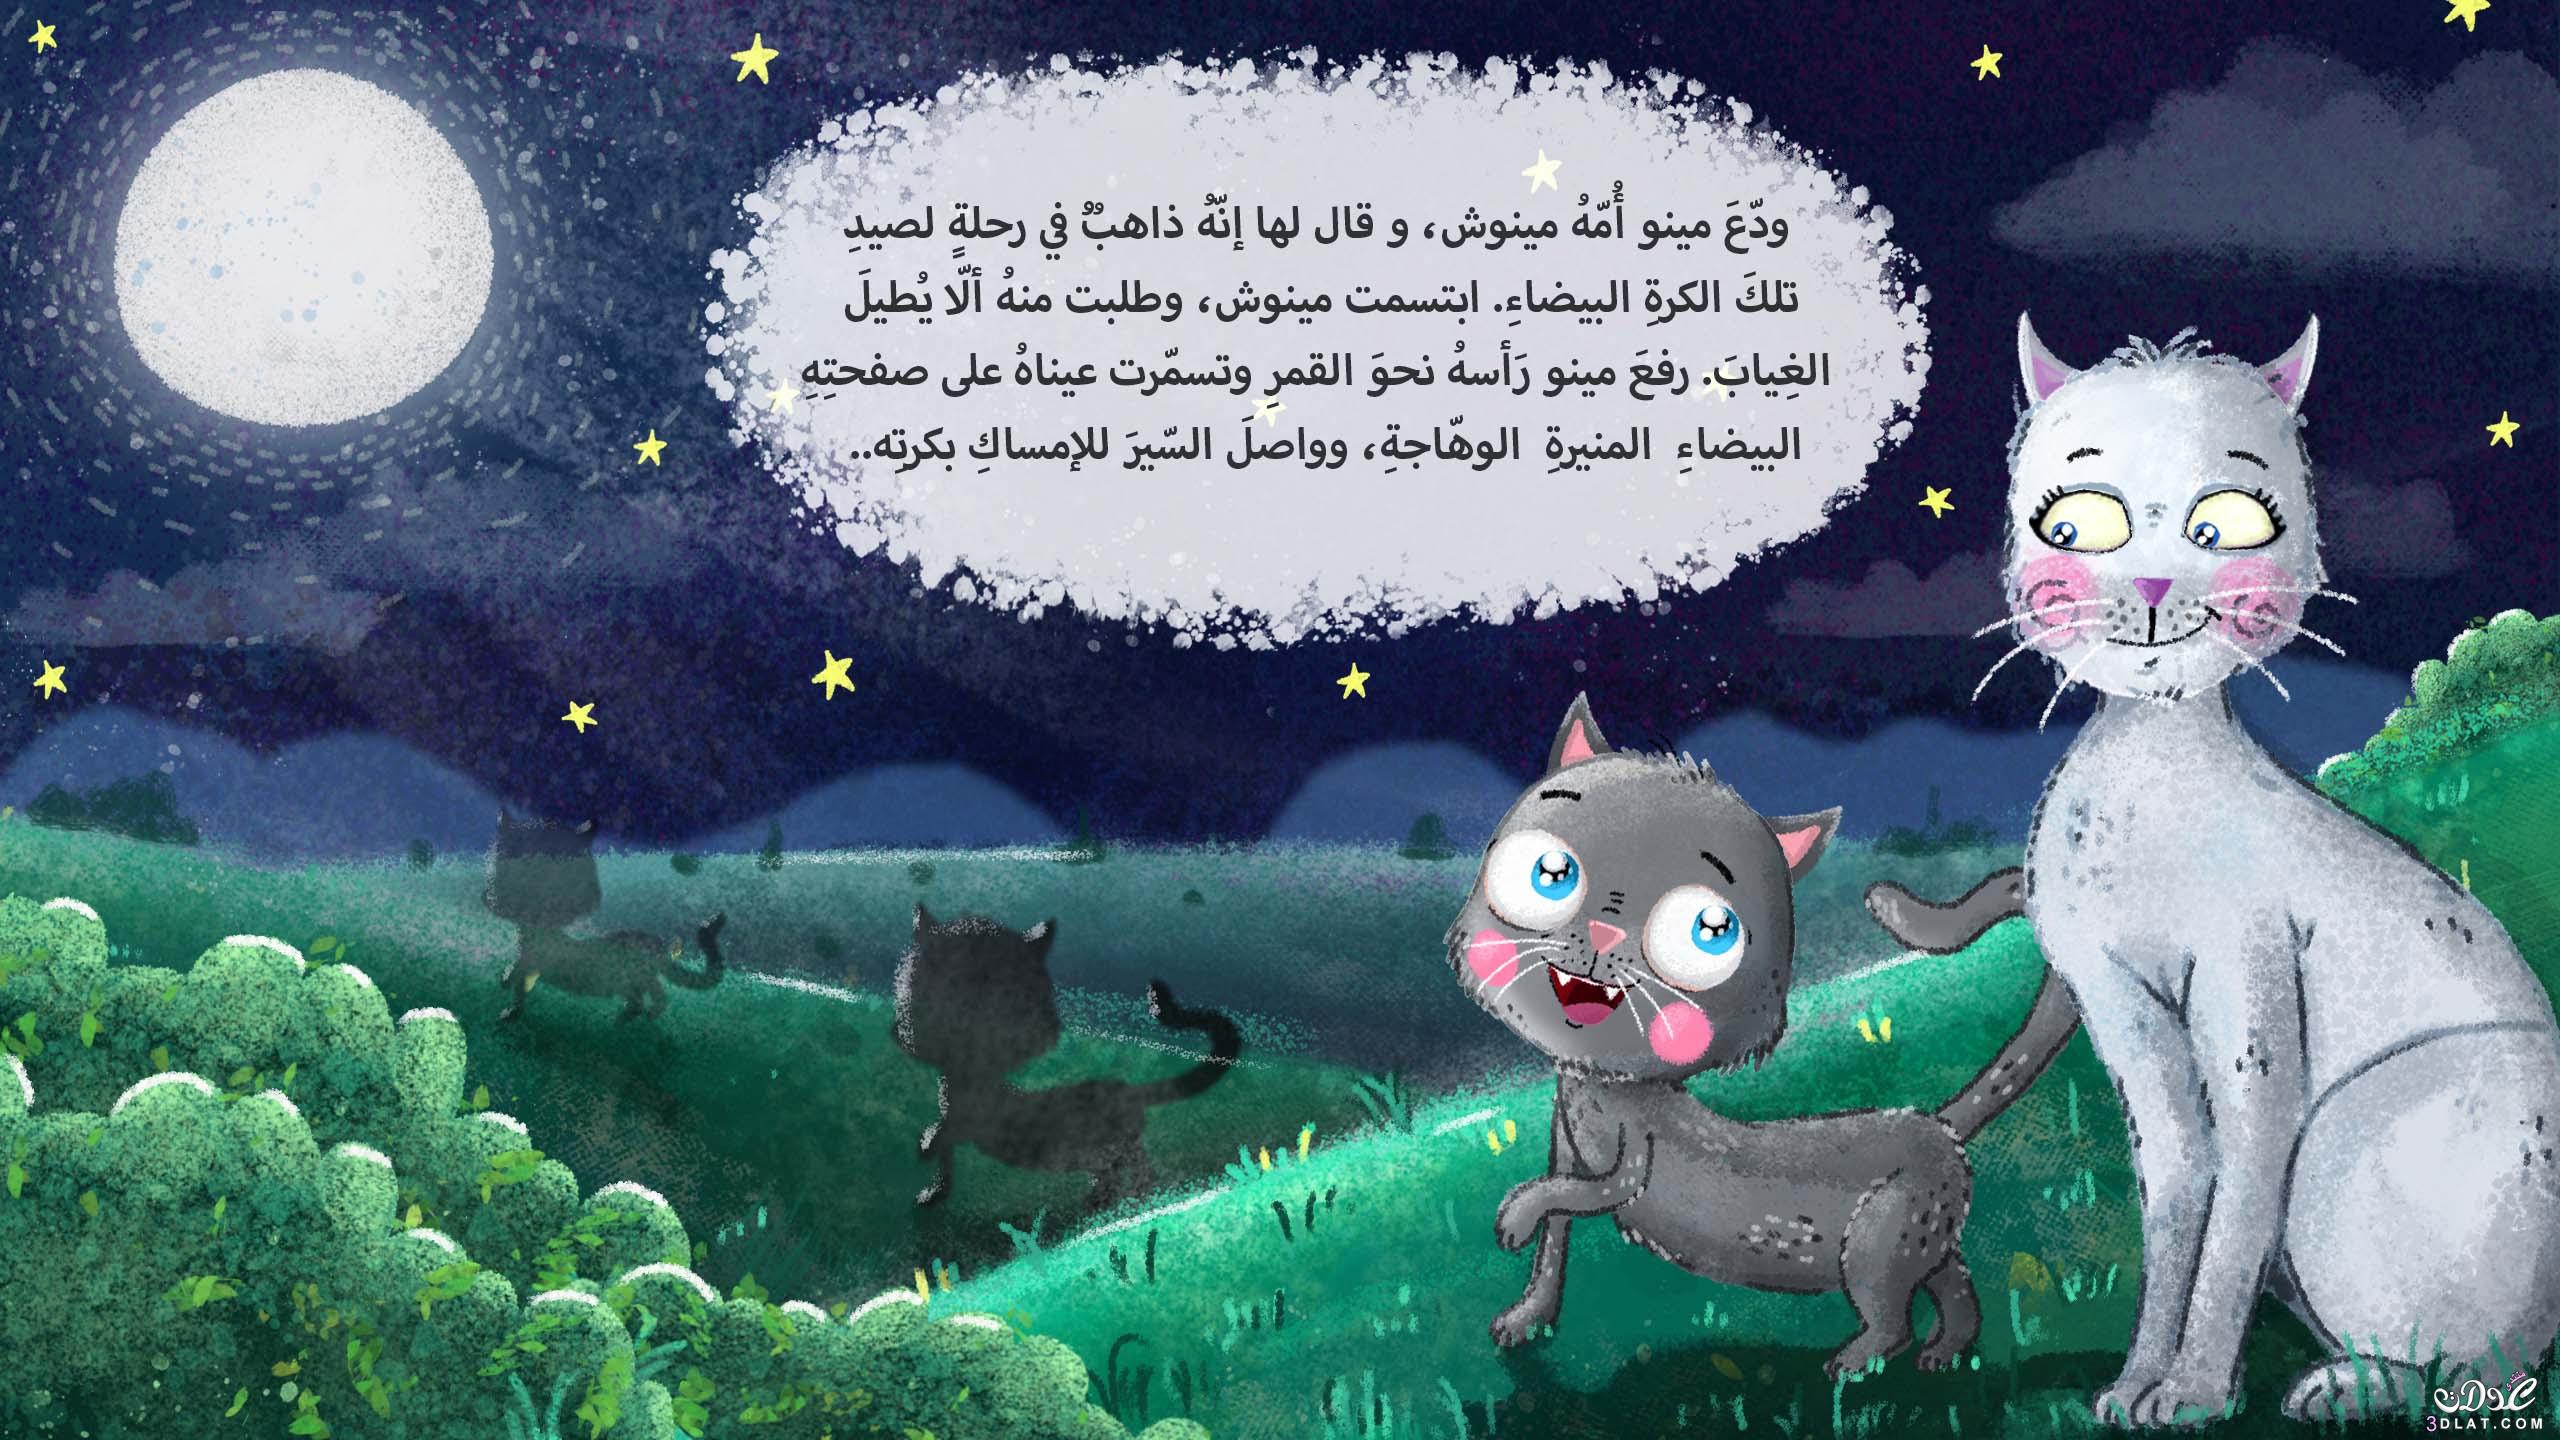 قصة مينو و القمر , قصة رائعة للاطفال , اروع القصص المصورة للاطفال